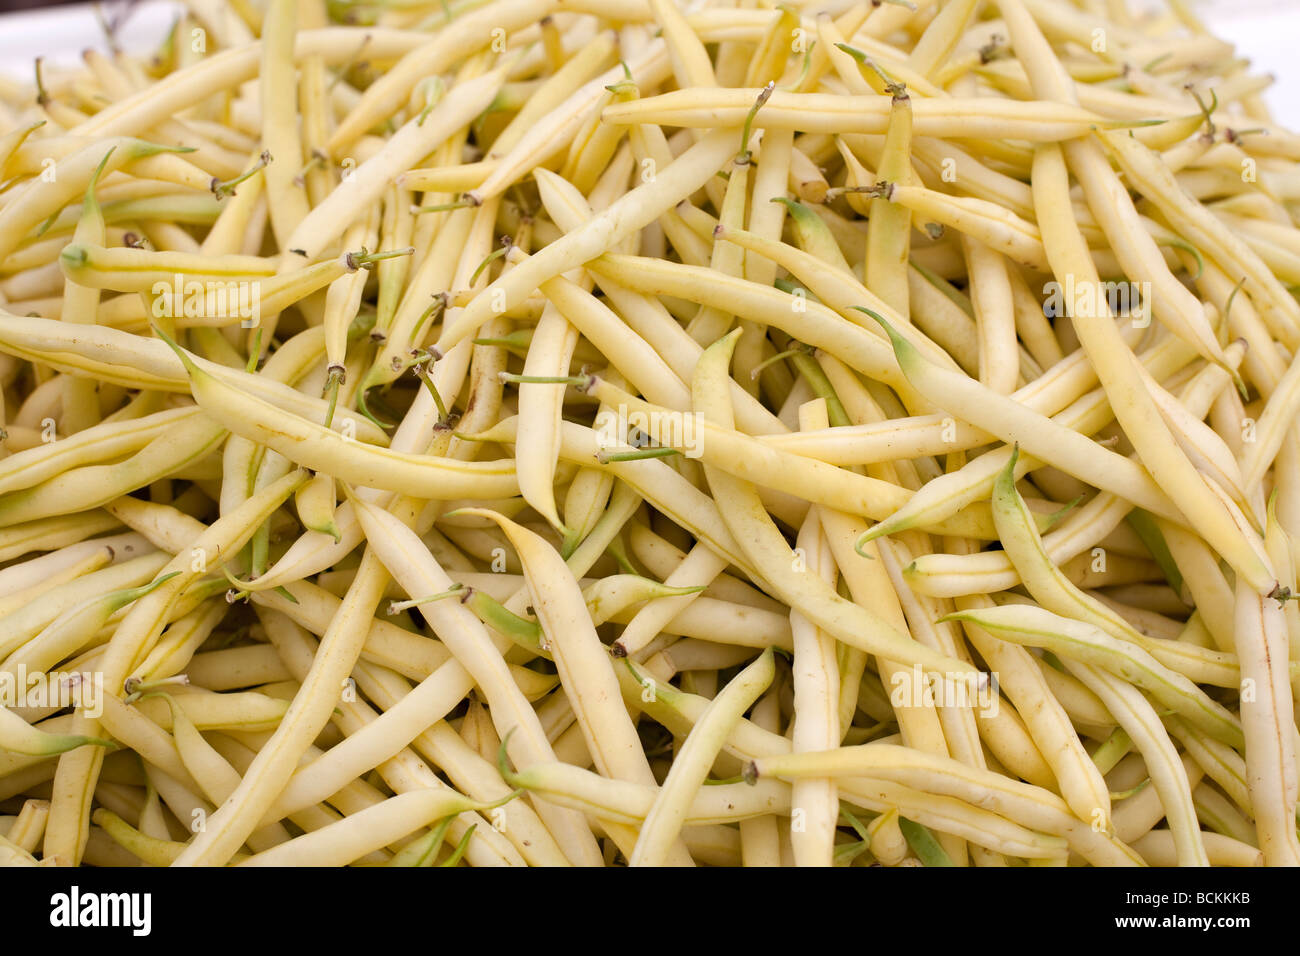 Vert et jaune coloré cultivés naturellement graines vendues au marché des légumes Banque D'Images